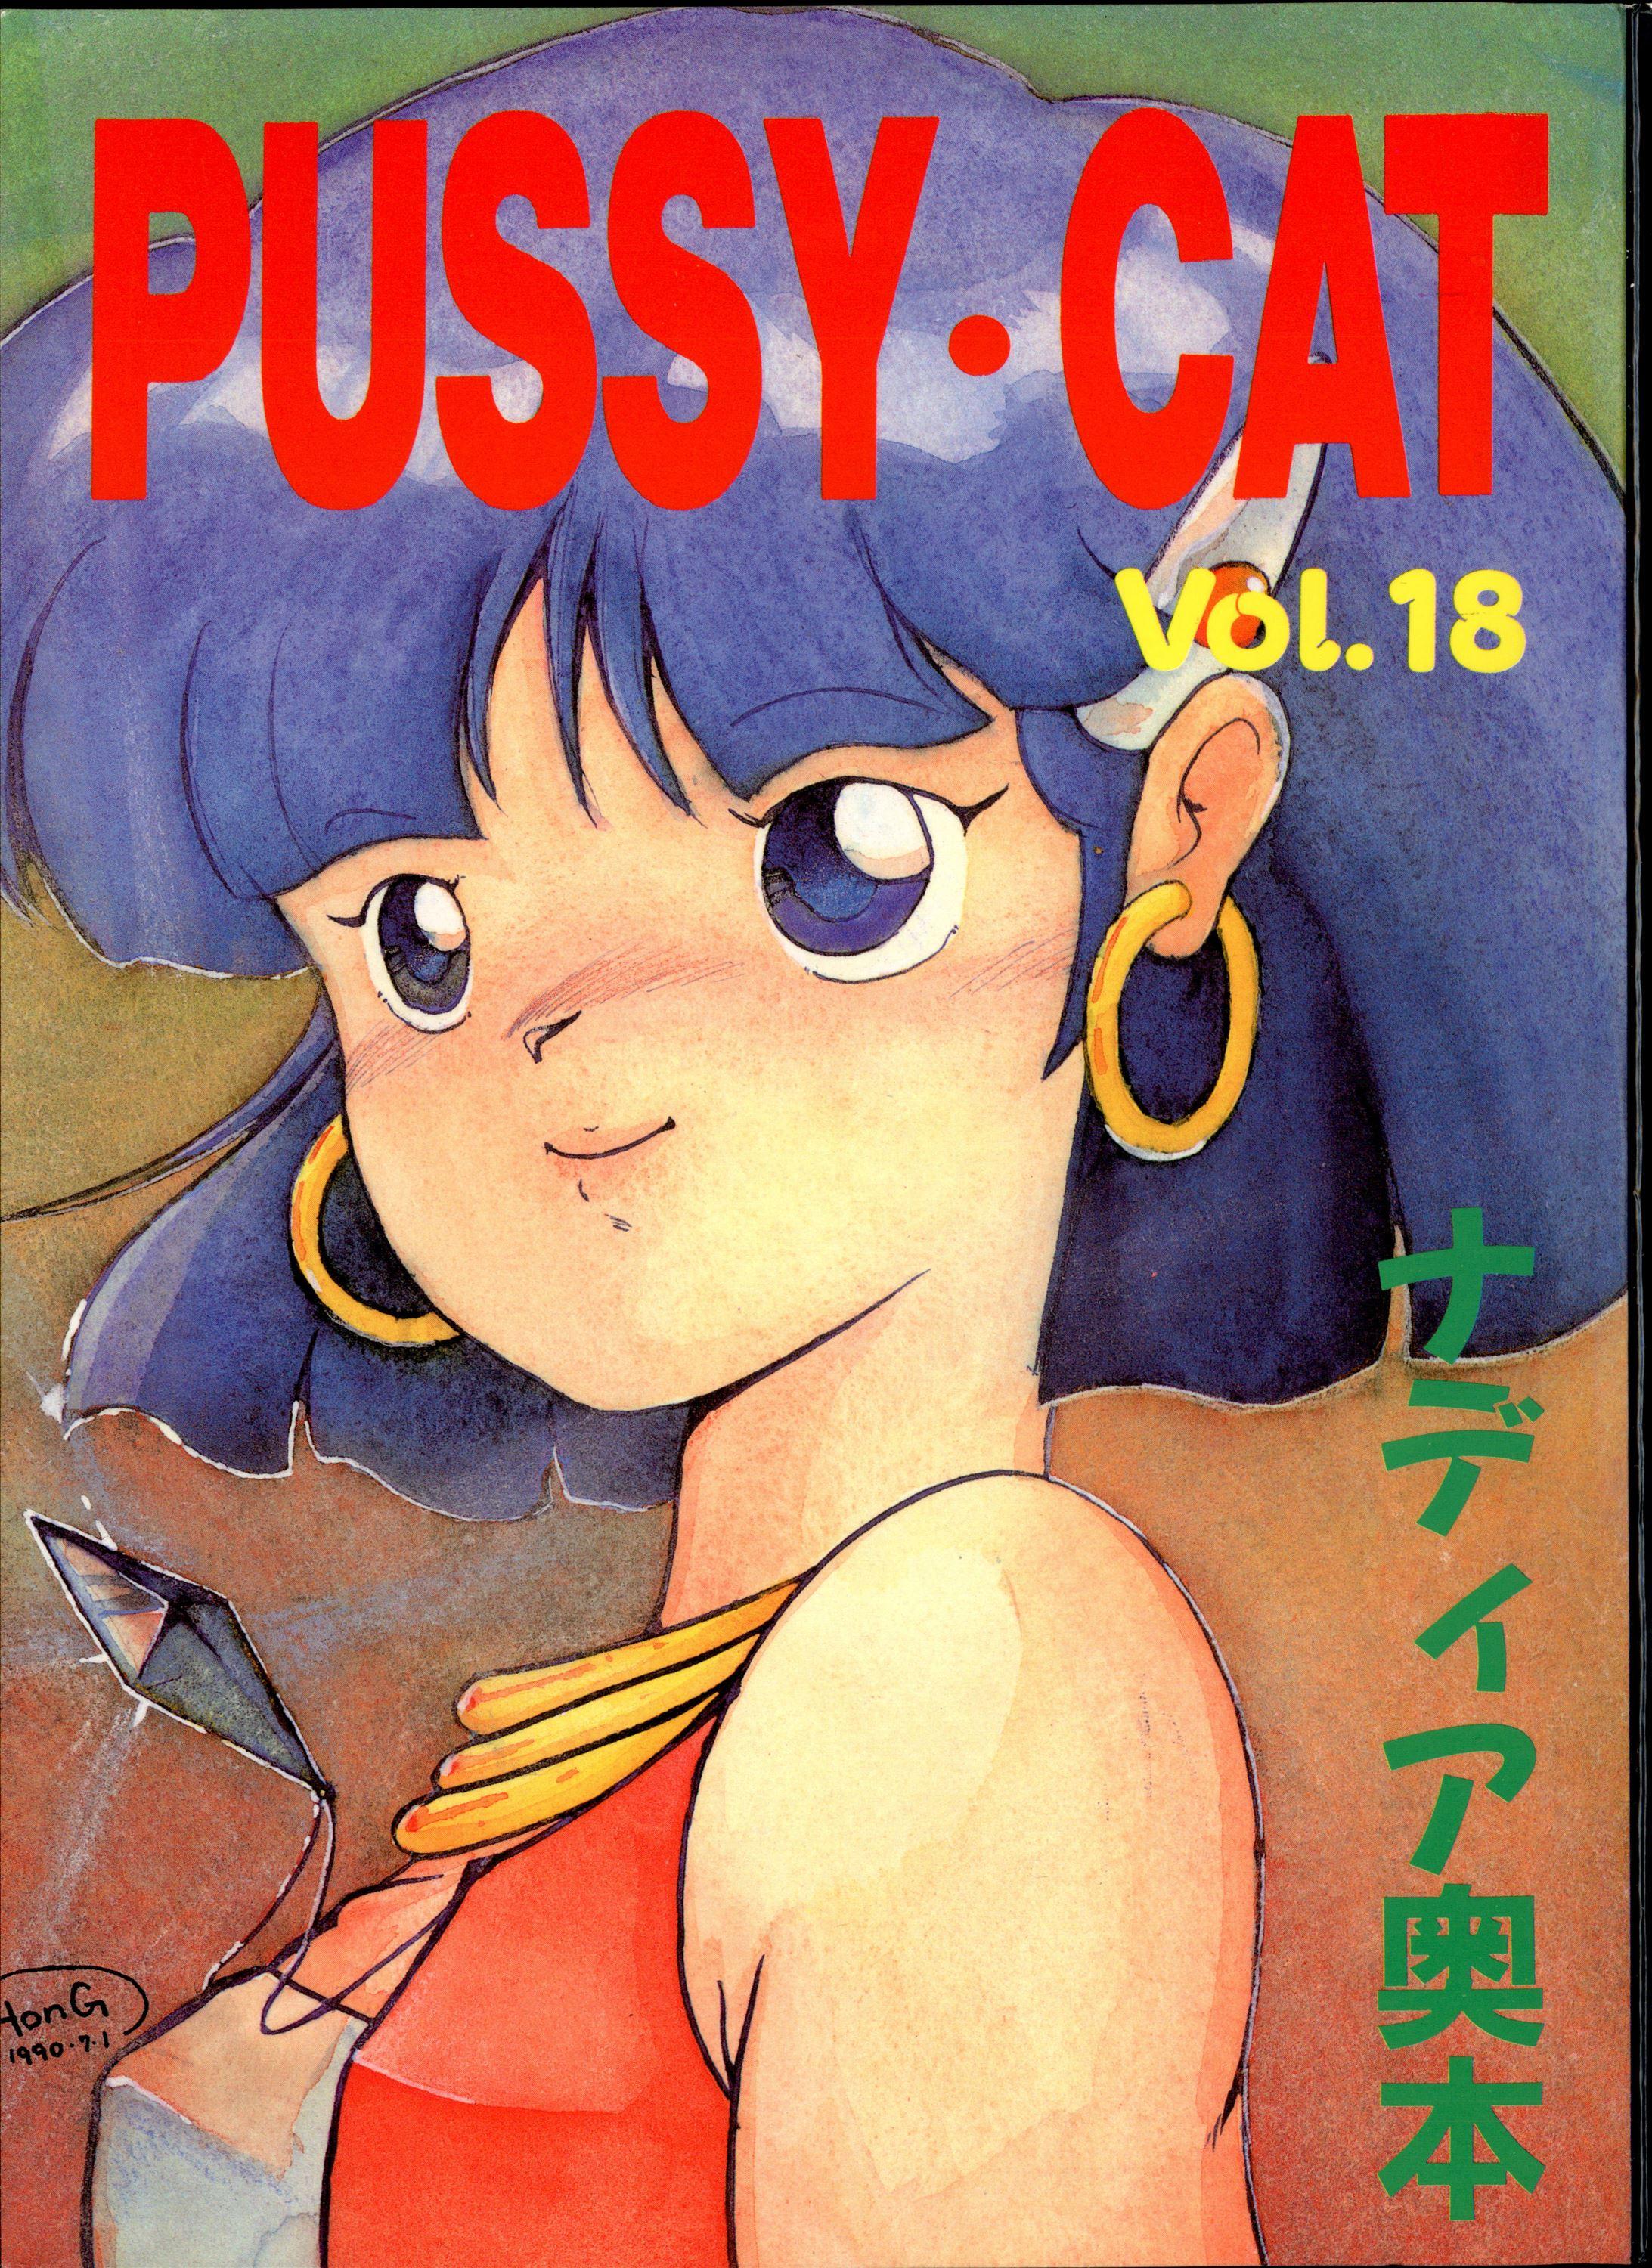 Job PUSSY CAT Vol.18 Nadia Okuhon - Fushigi no umi no nadia 3x3 eyes Magical angel sweet mint Chupa - Page 2